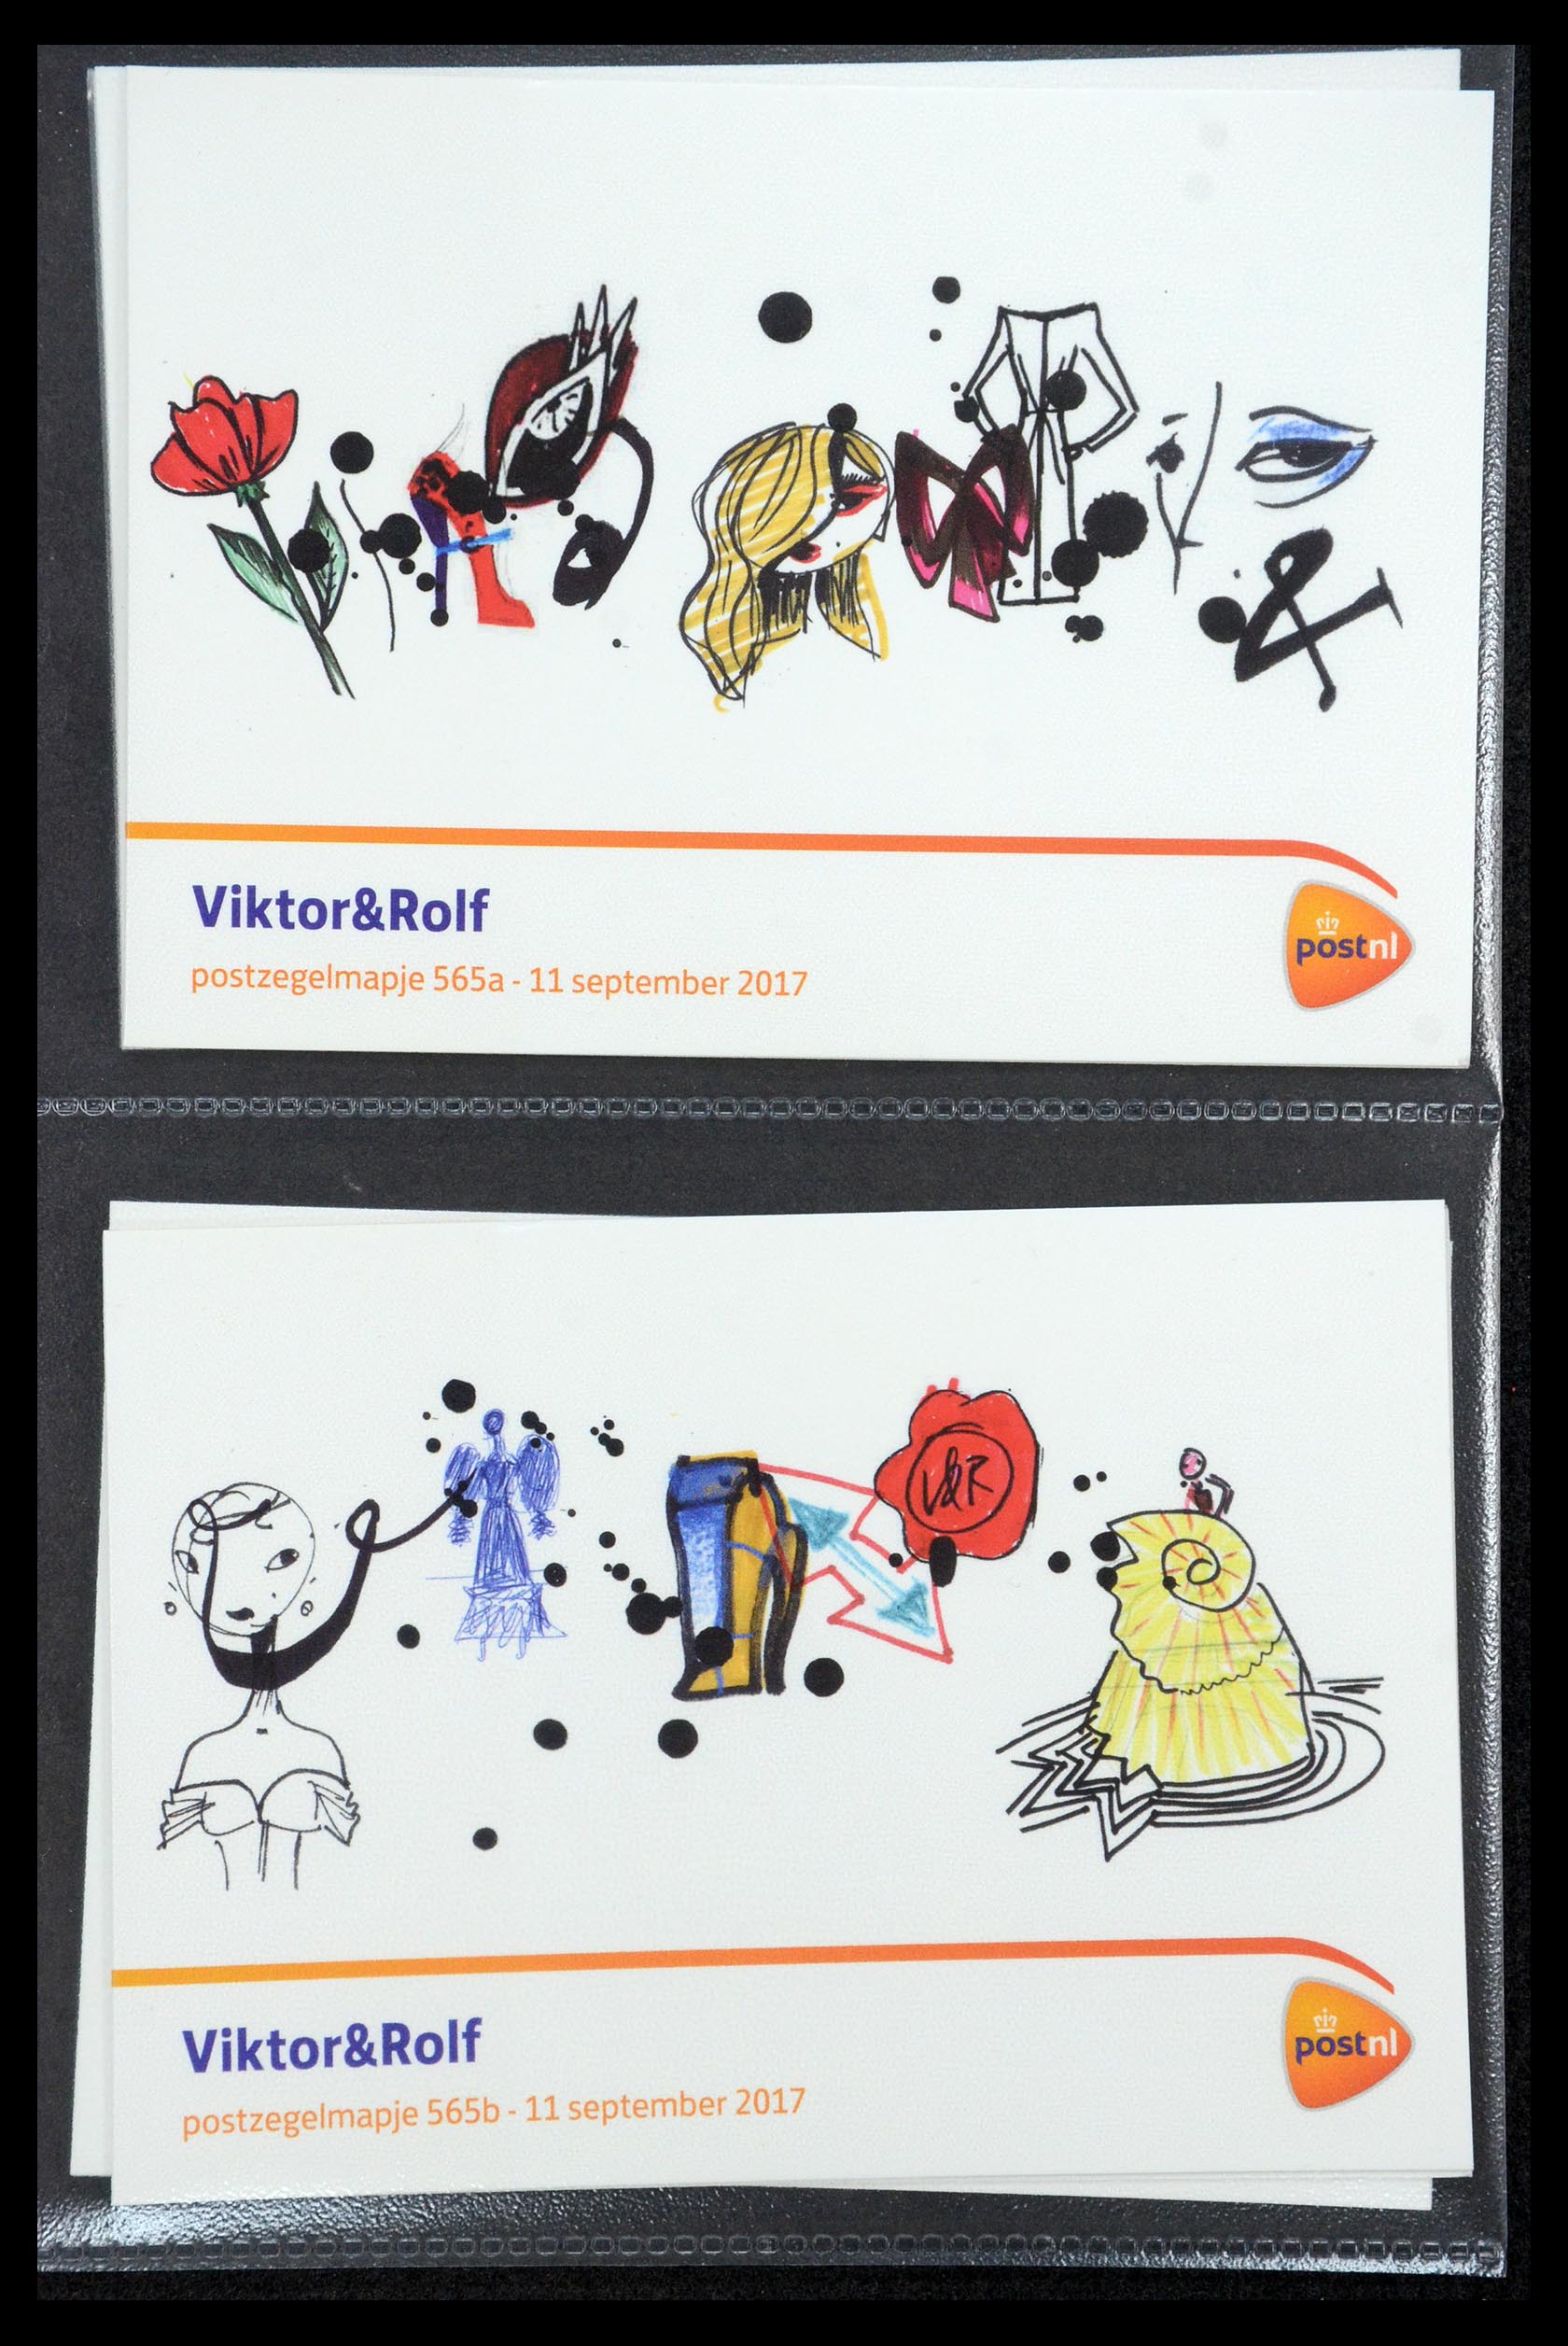 35187 339 - Stamp Collection 35187 Netherlands PTT presentation packs 1982-2019!